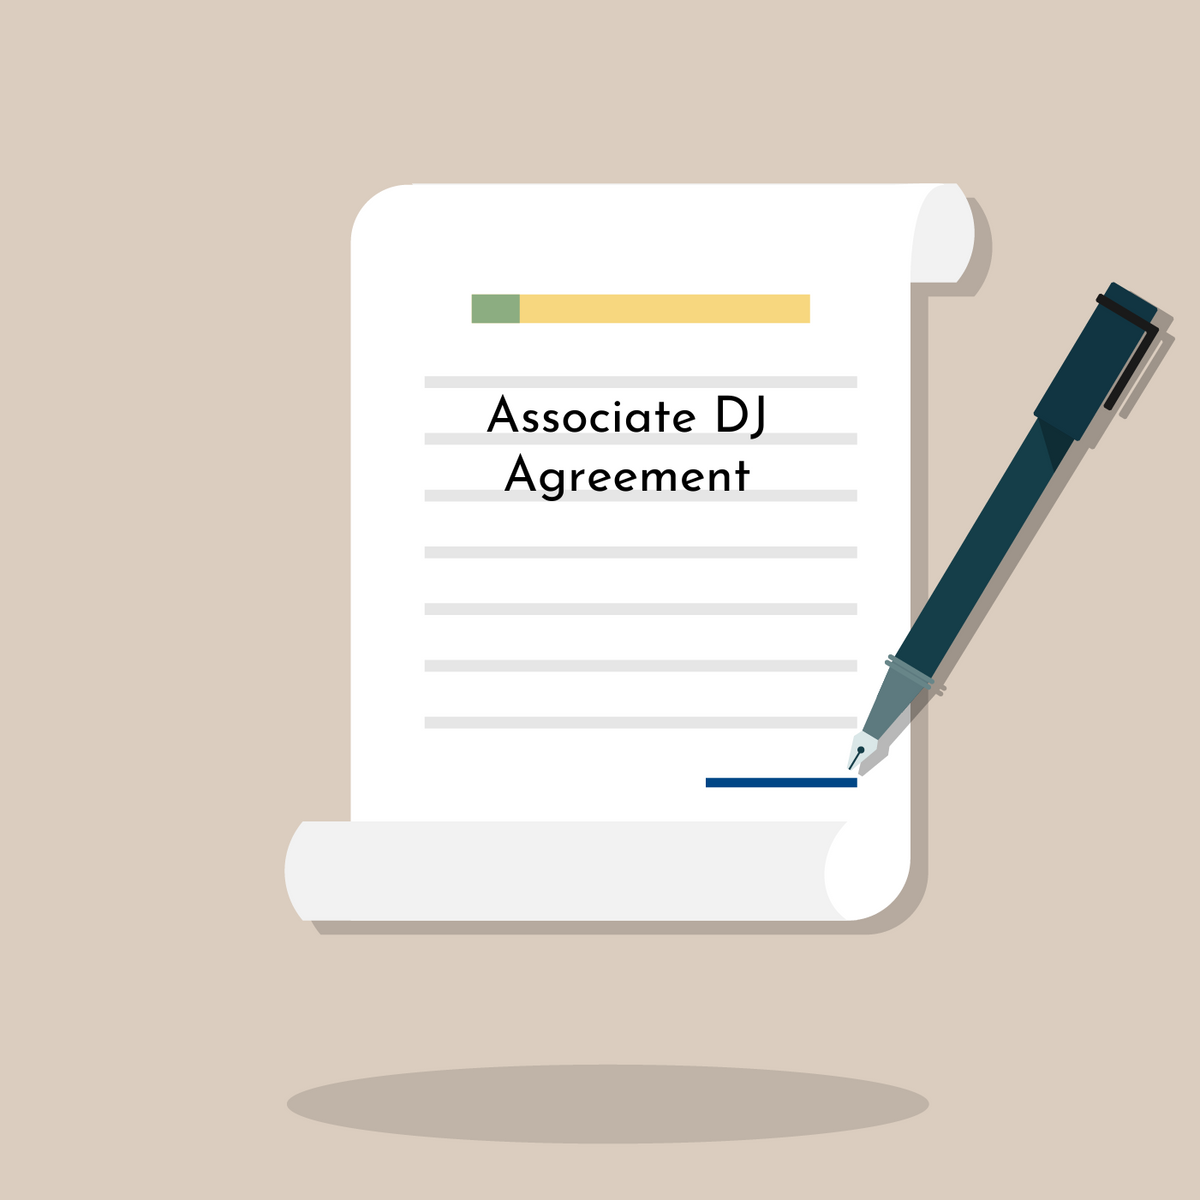 Associate DJ Agreement